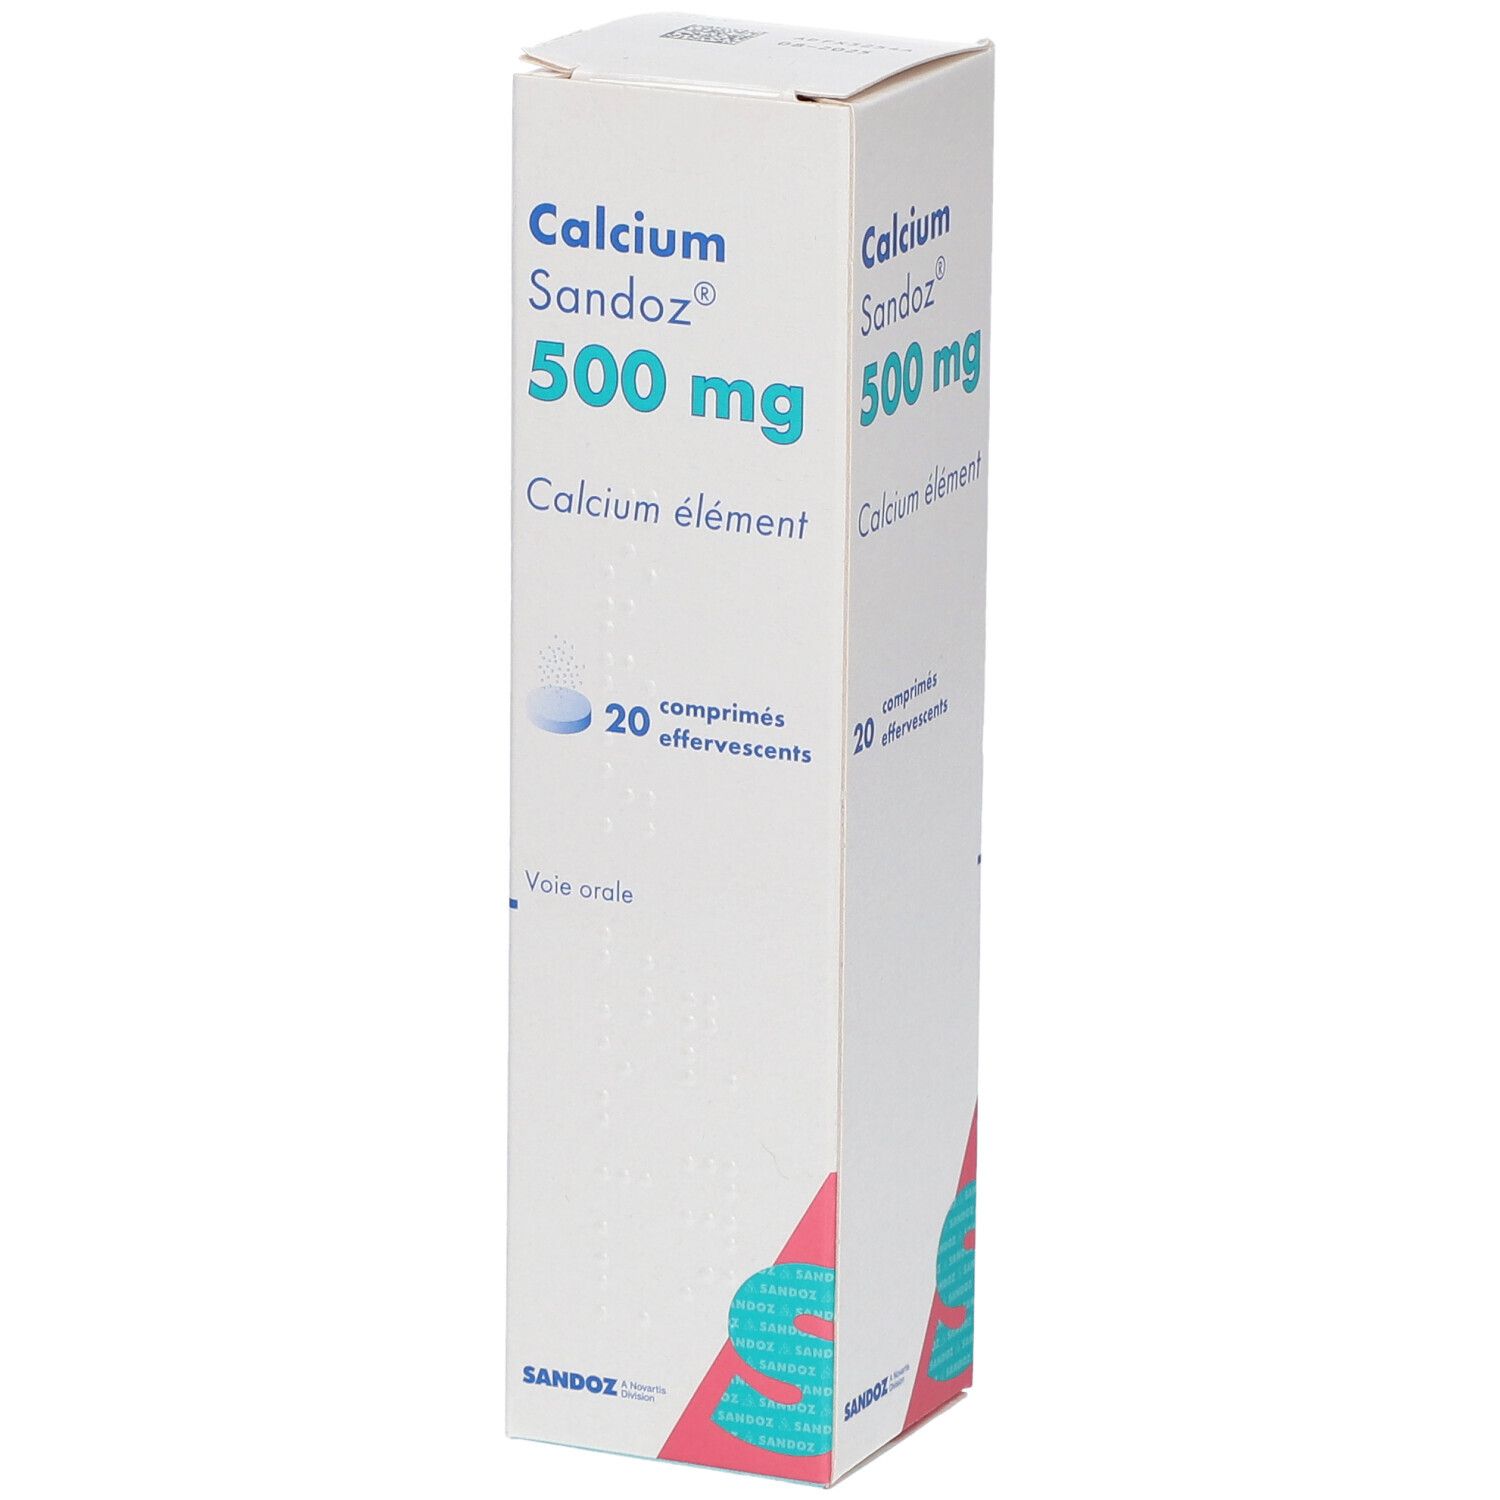 Calcium Sandoz® 500 mg